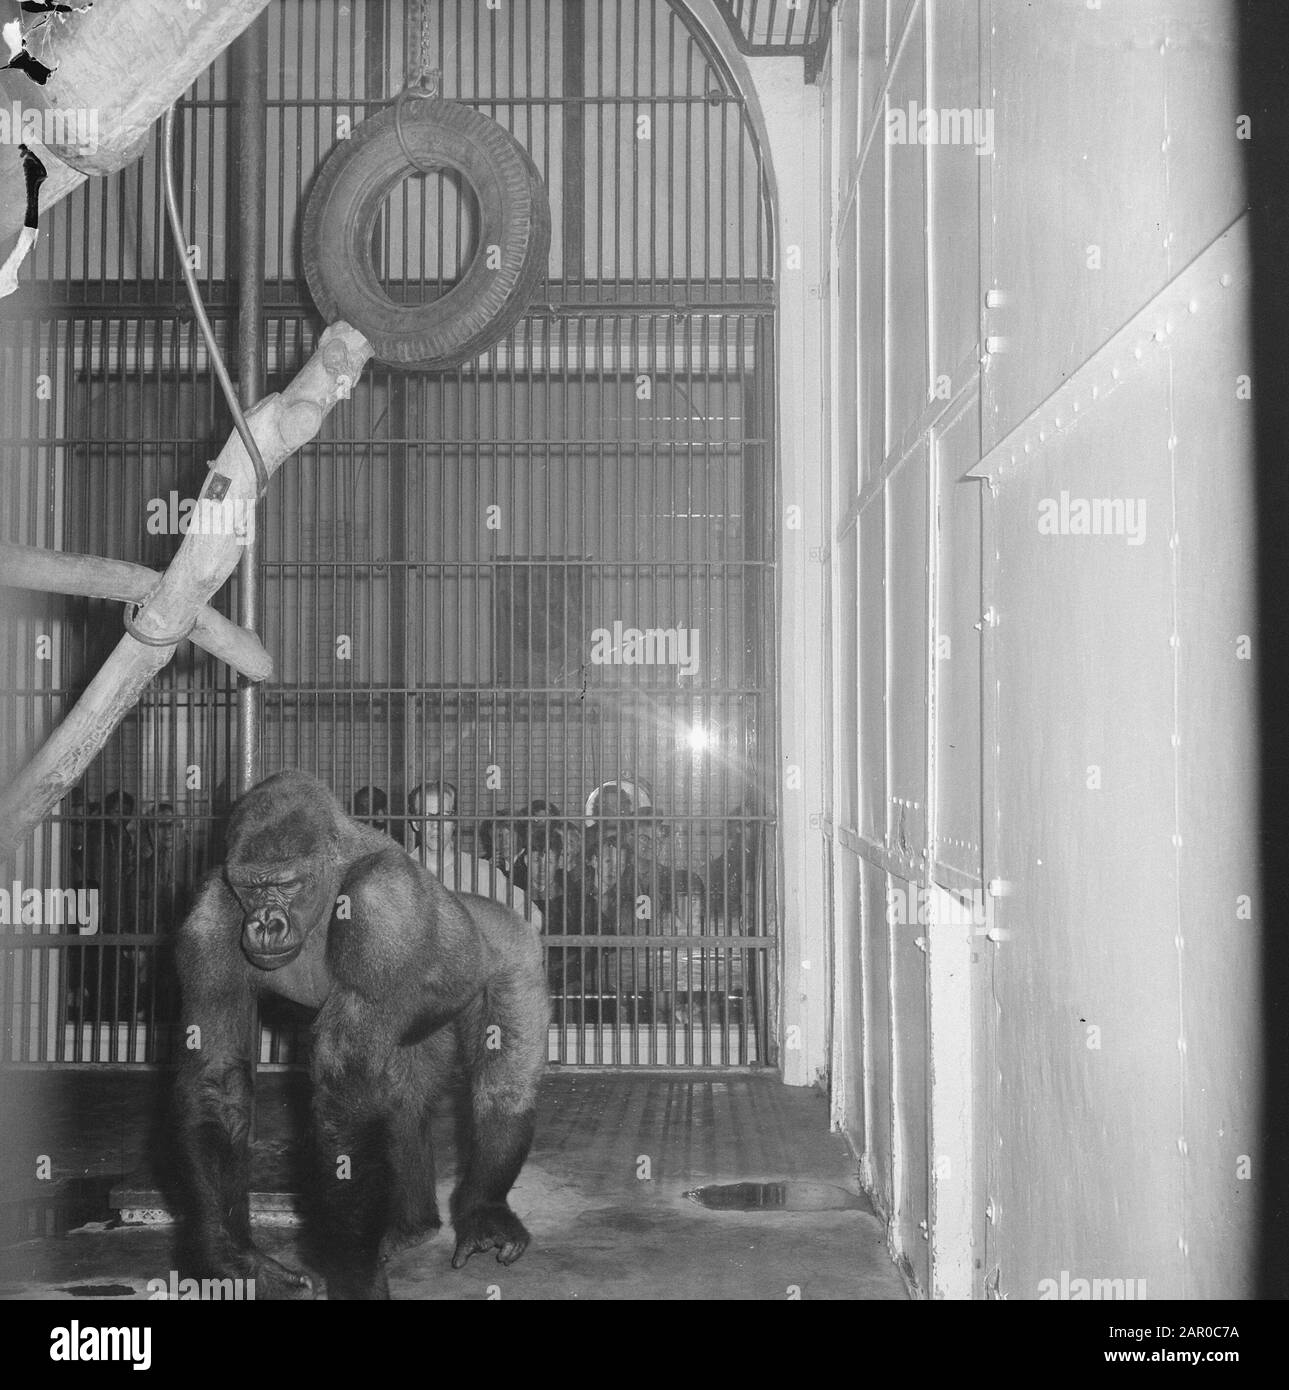 Gorilla Babar in Artis verheiratet mit Gorilladame in der Provinz Noord-Holland Datum: 16. april 1963 Ort: Amsterdam, Noord-Holland Schlüsselwörter: Zoos Institutionenname: Artis : Nijs, Jac. De/Anefo Stockfoto